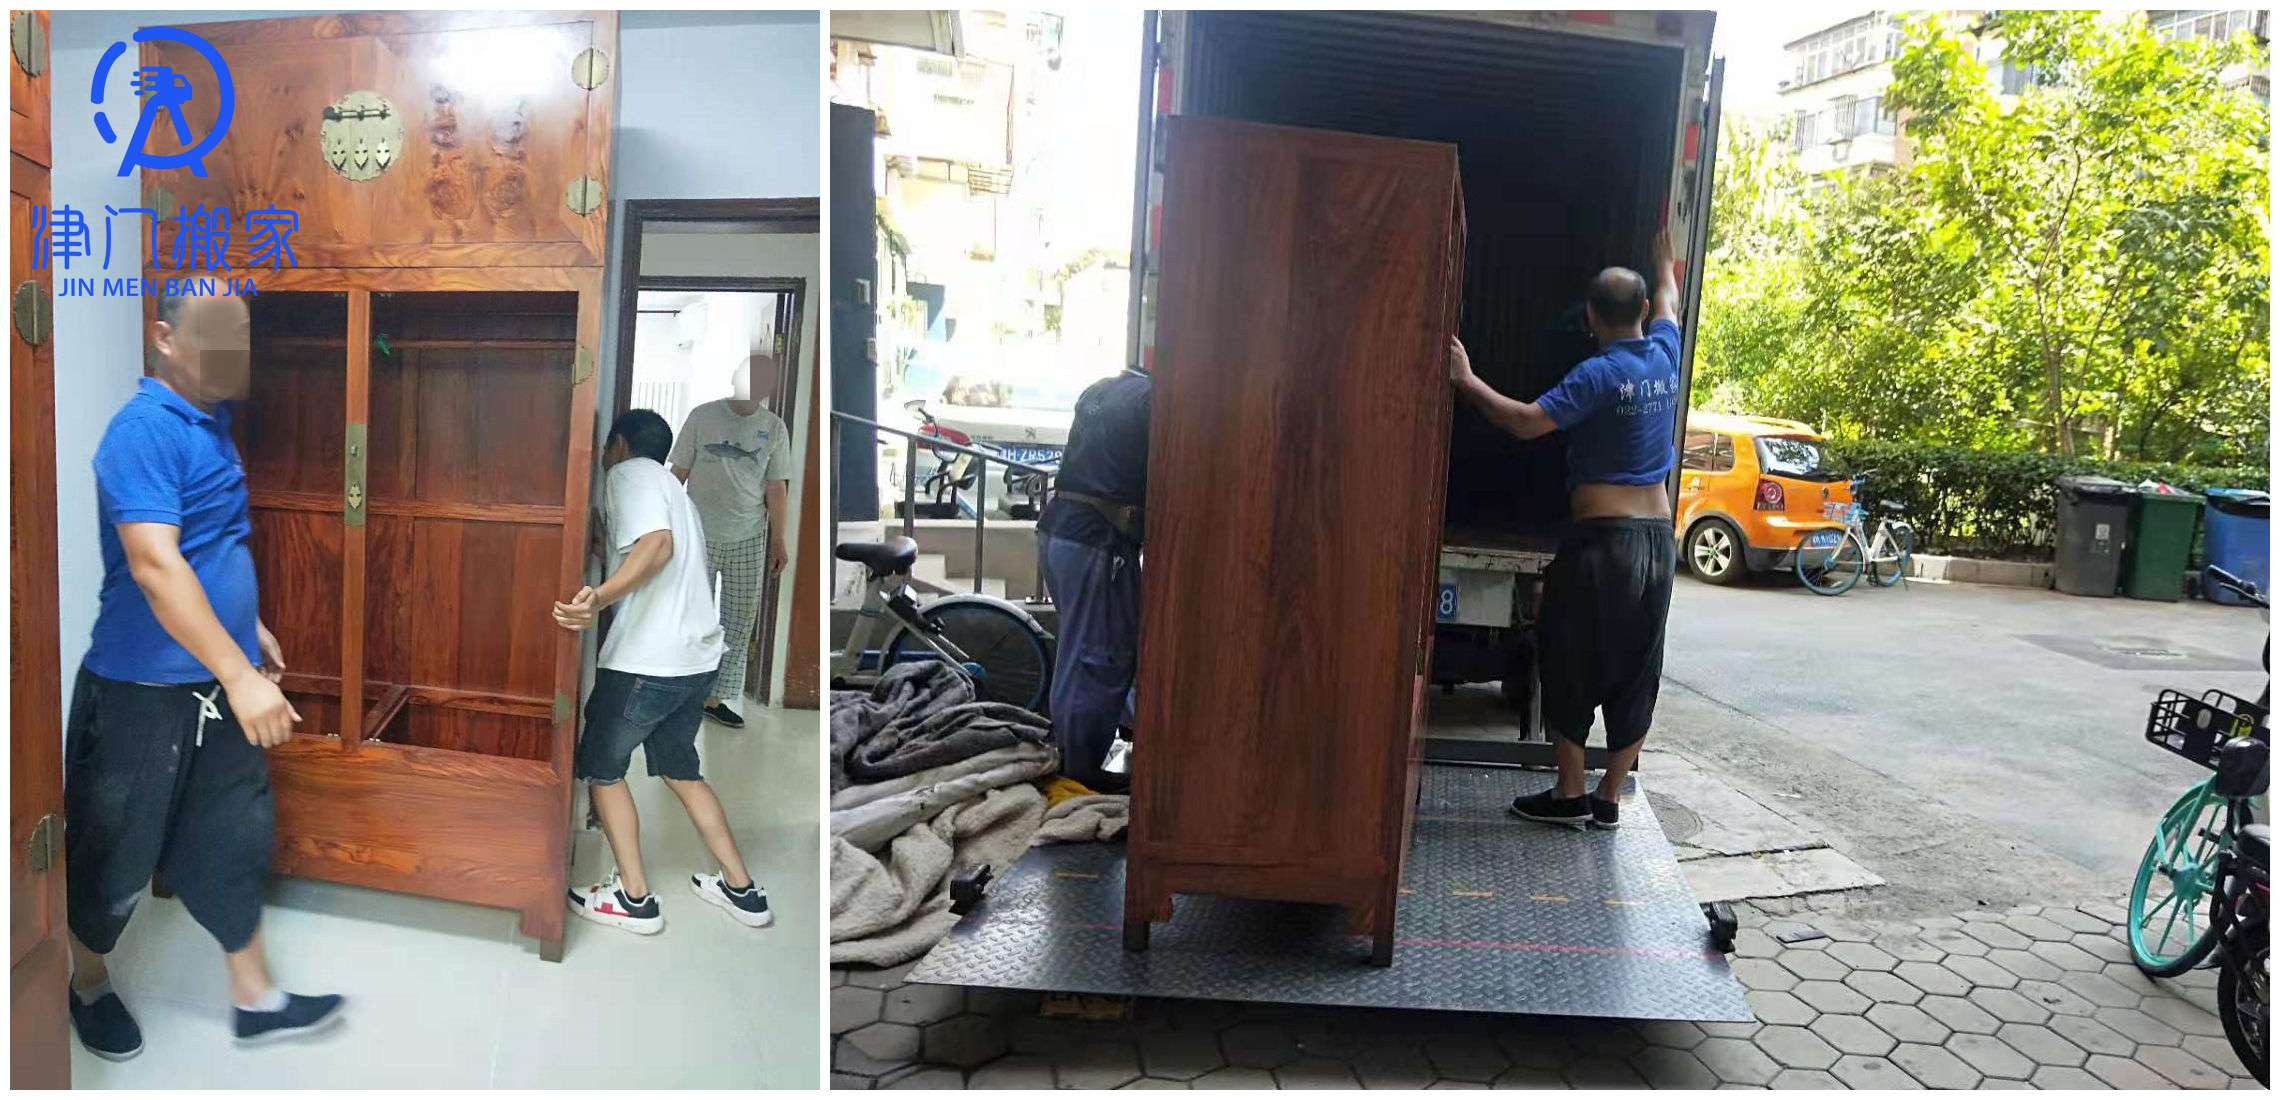 紅木家具搬運公司提供尾板車搬運服務